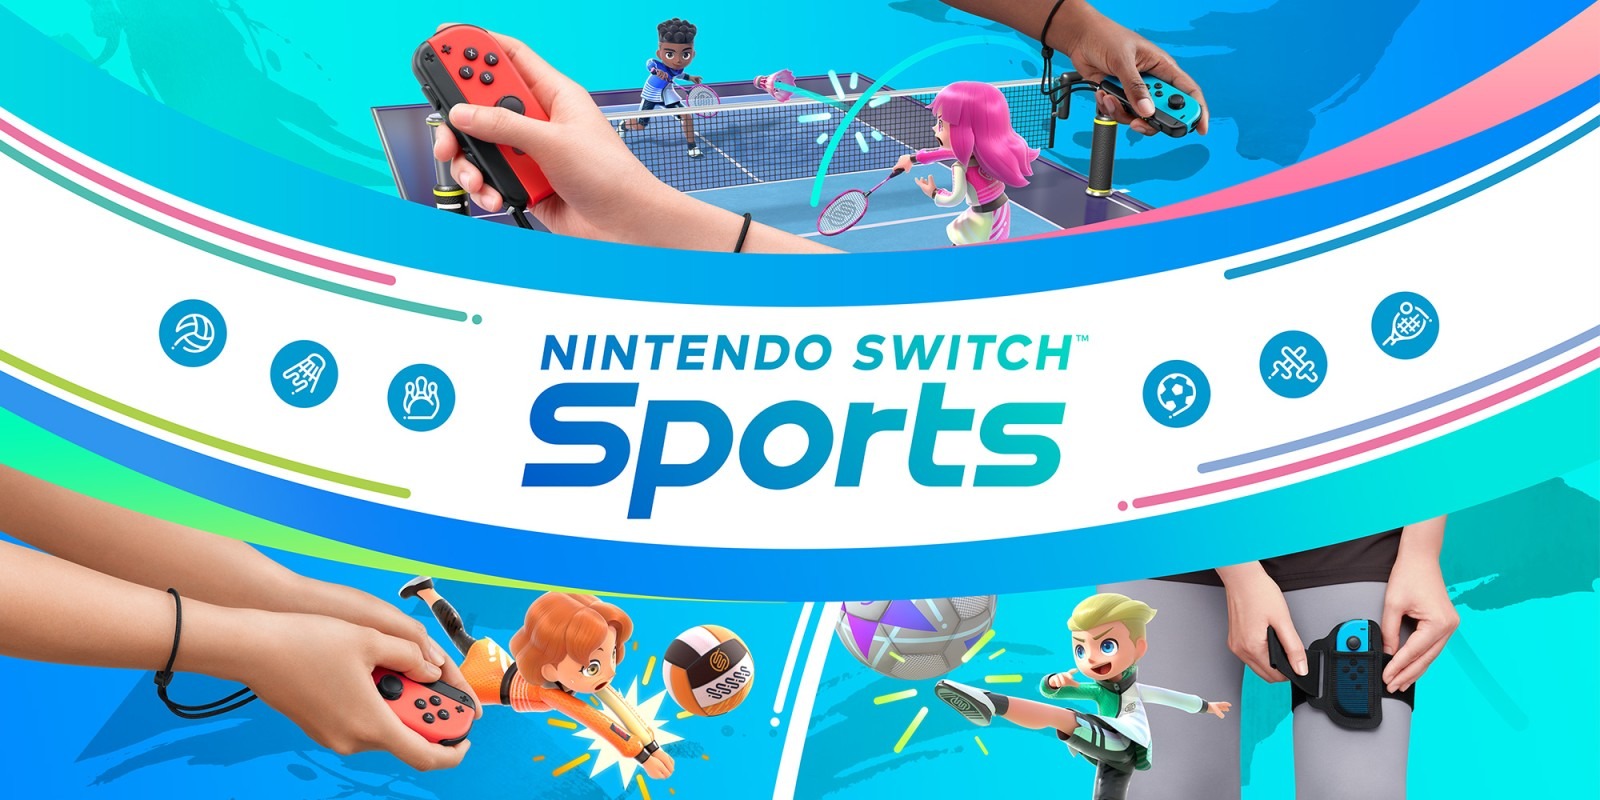 Nintendo Switch Sports causa boas impressões entre os críticos